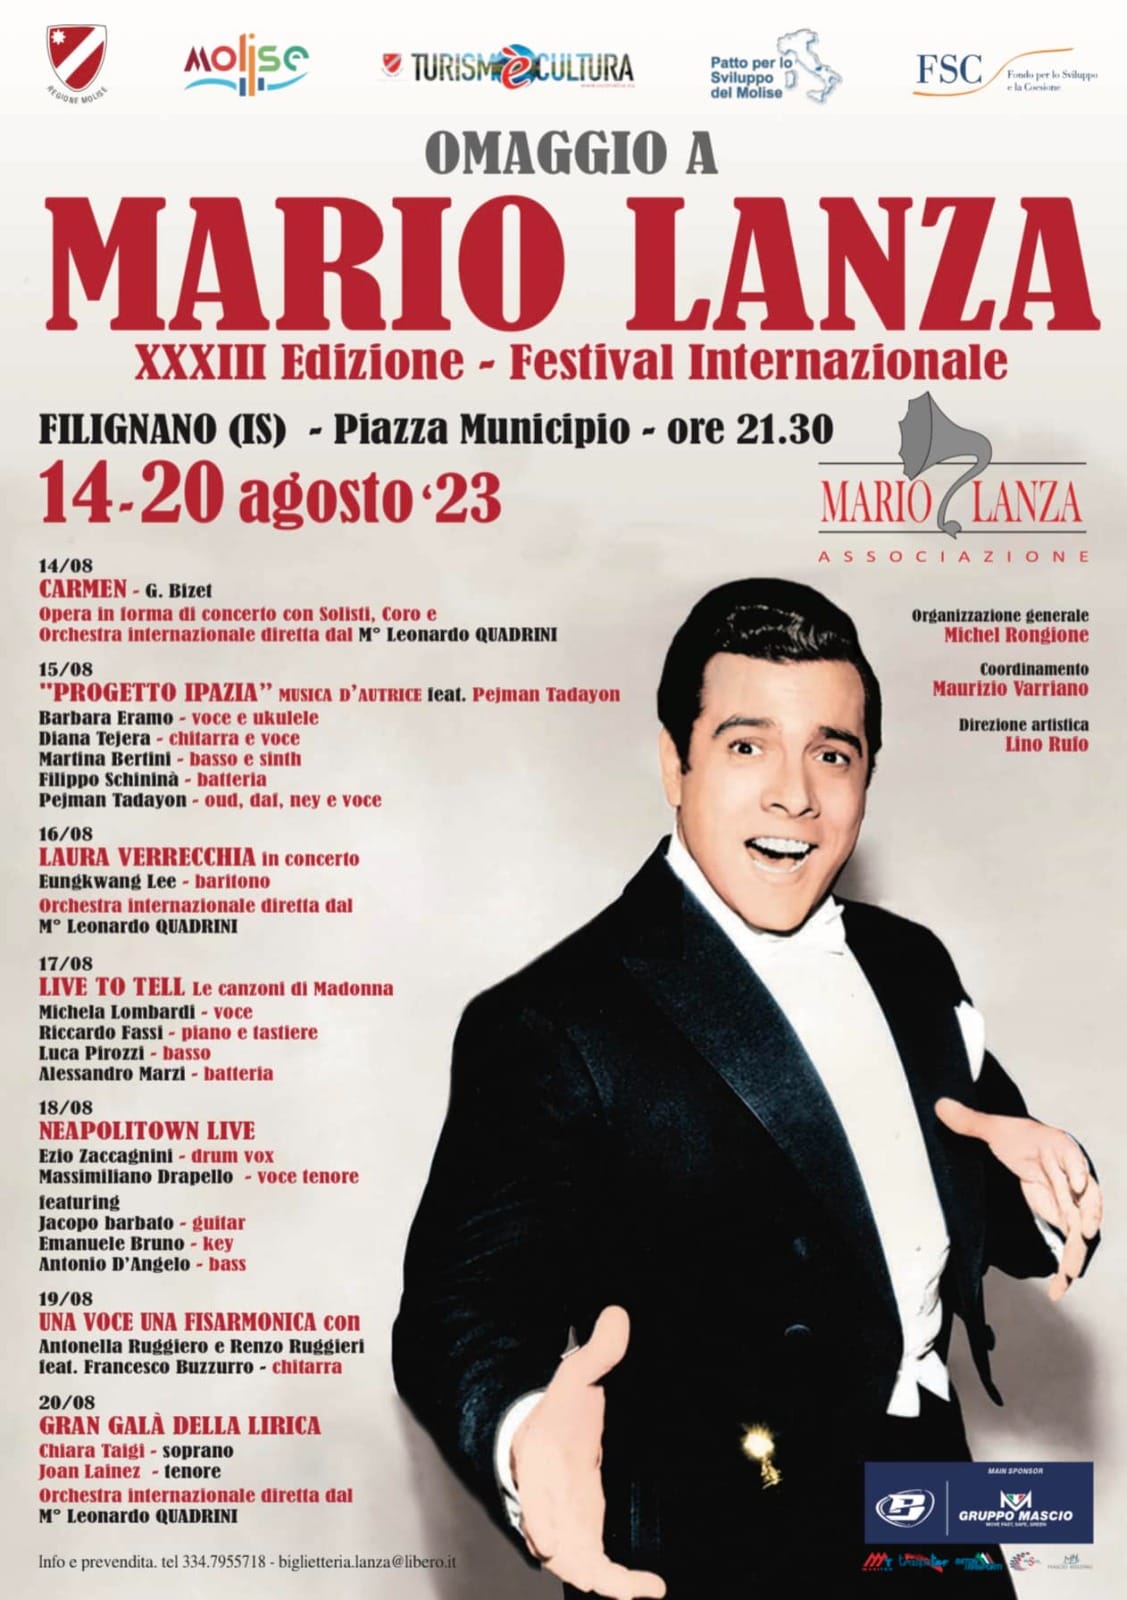 Al via il Festival Internazionale “Omaggio a Mario Lanza”